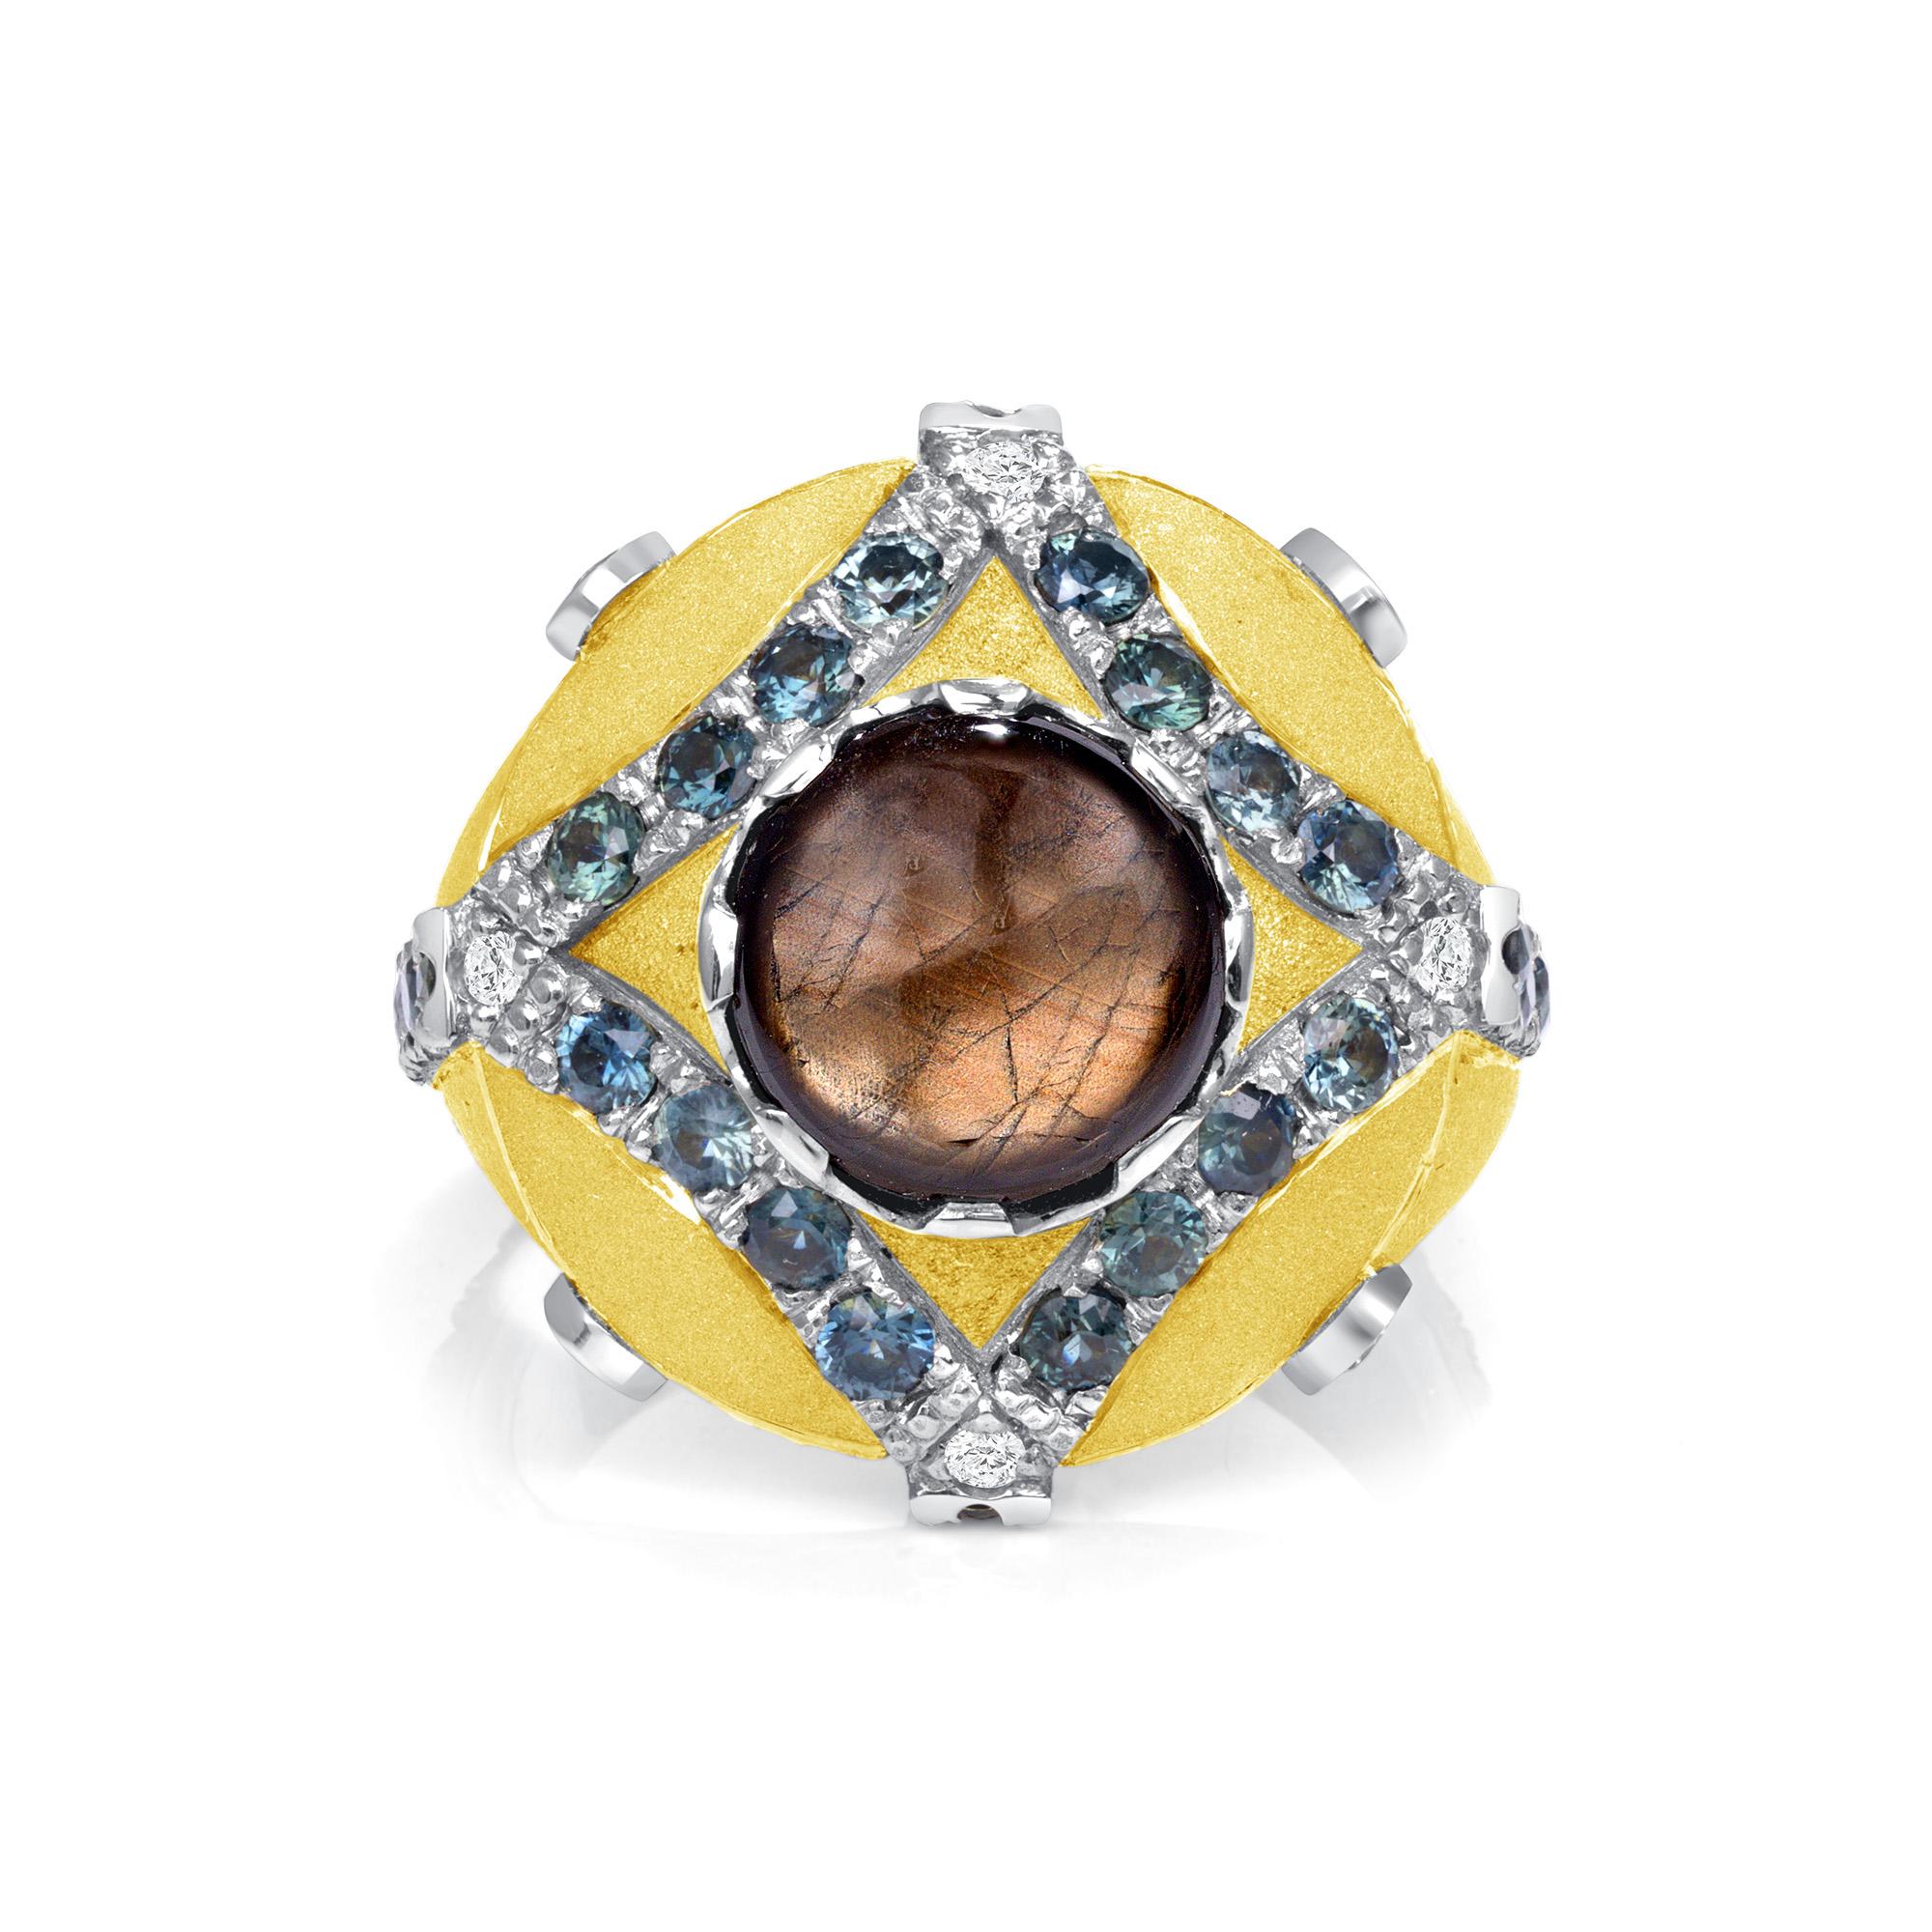 4,11 Karat Gold Sheen Saphir Diamant Gelbgold Fashion Ring, Auf Lager.
Dieser GoldSheen TM und blauer Saphir Herrenring verfügt über einen zentralen 4,11-Karat-Sternsaphir. Dieser Ring hat eine sandgestrahlte Oberfläche aus 18 Karat Gelbgold und